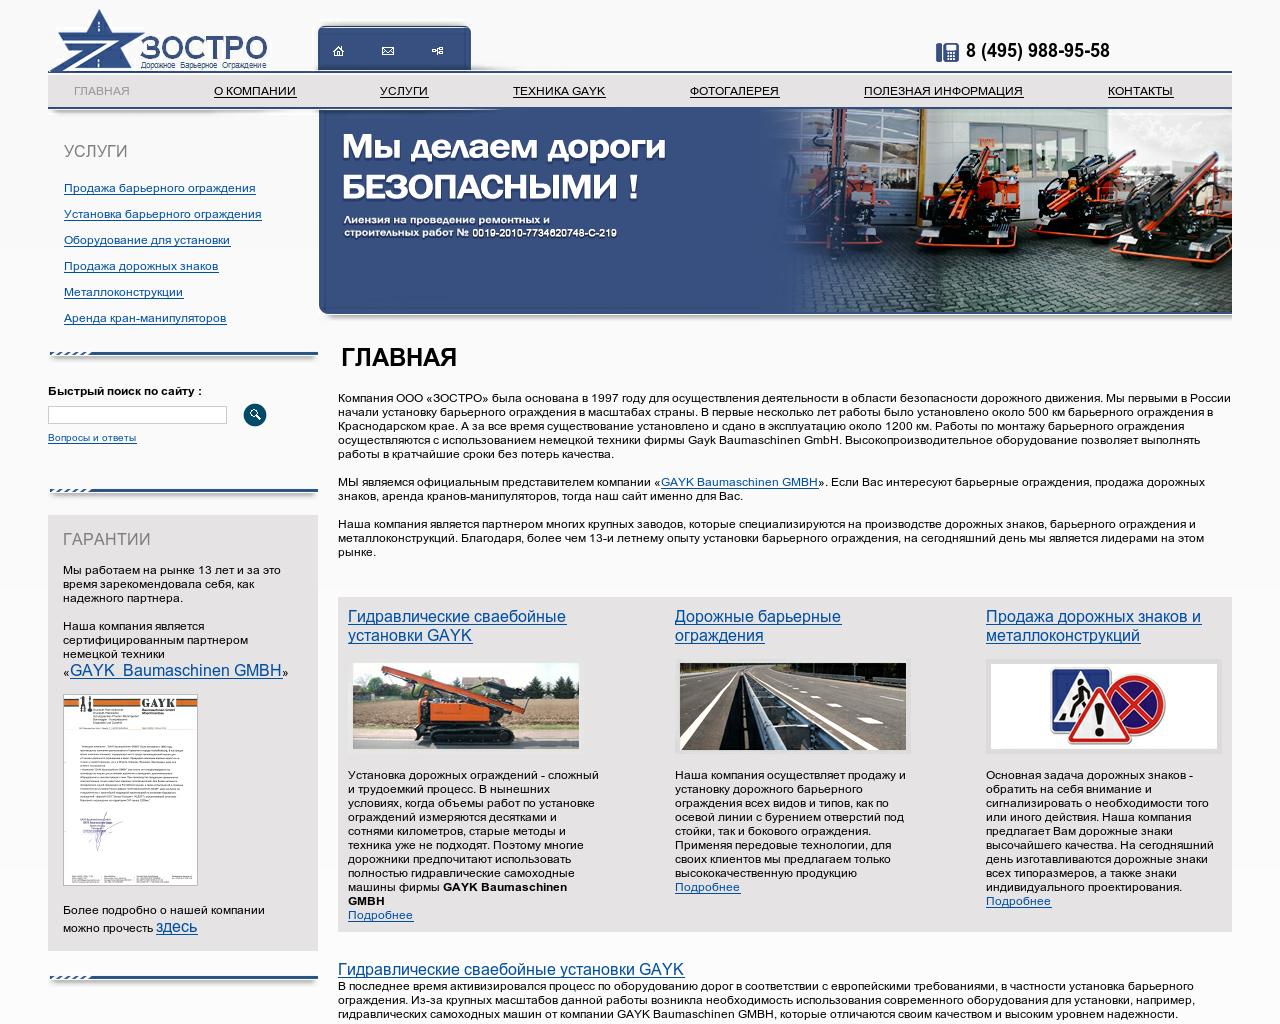 Изображение сайта zostro.ru в разрешении 1280x1024